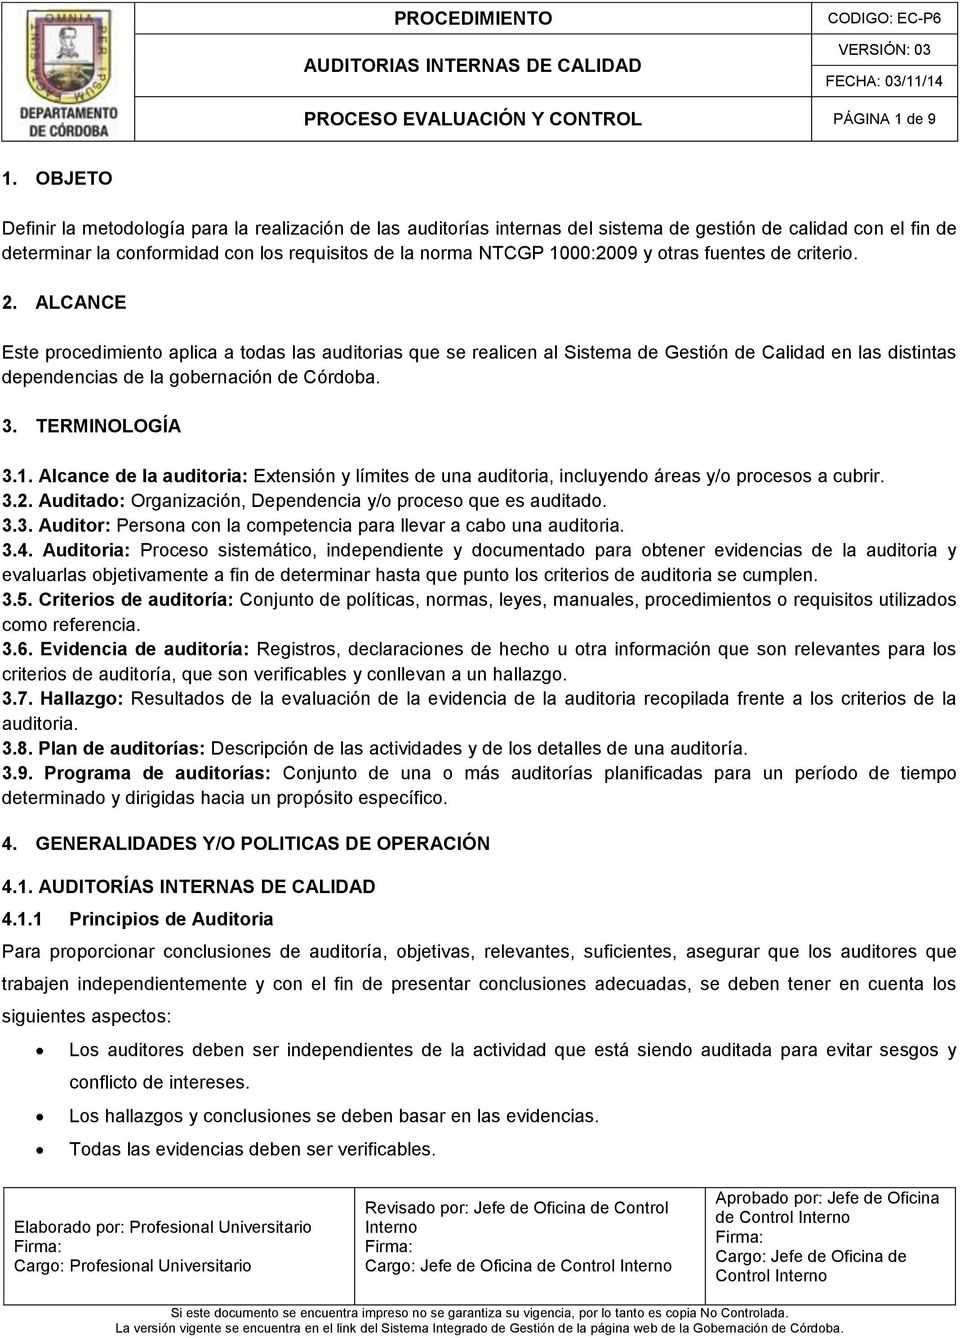 otras fuentes de criterio. 2. ALCANCE Este procedimiento aplica a todas las auditorias que se realicen al Sistema de Gestión en las distintas dependencias de la gobernación de Córdoba. 3.